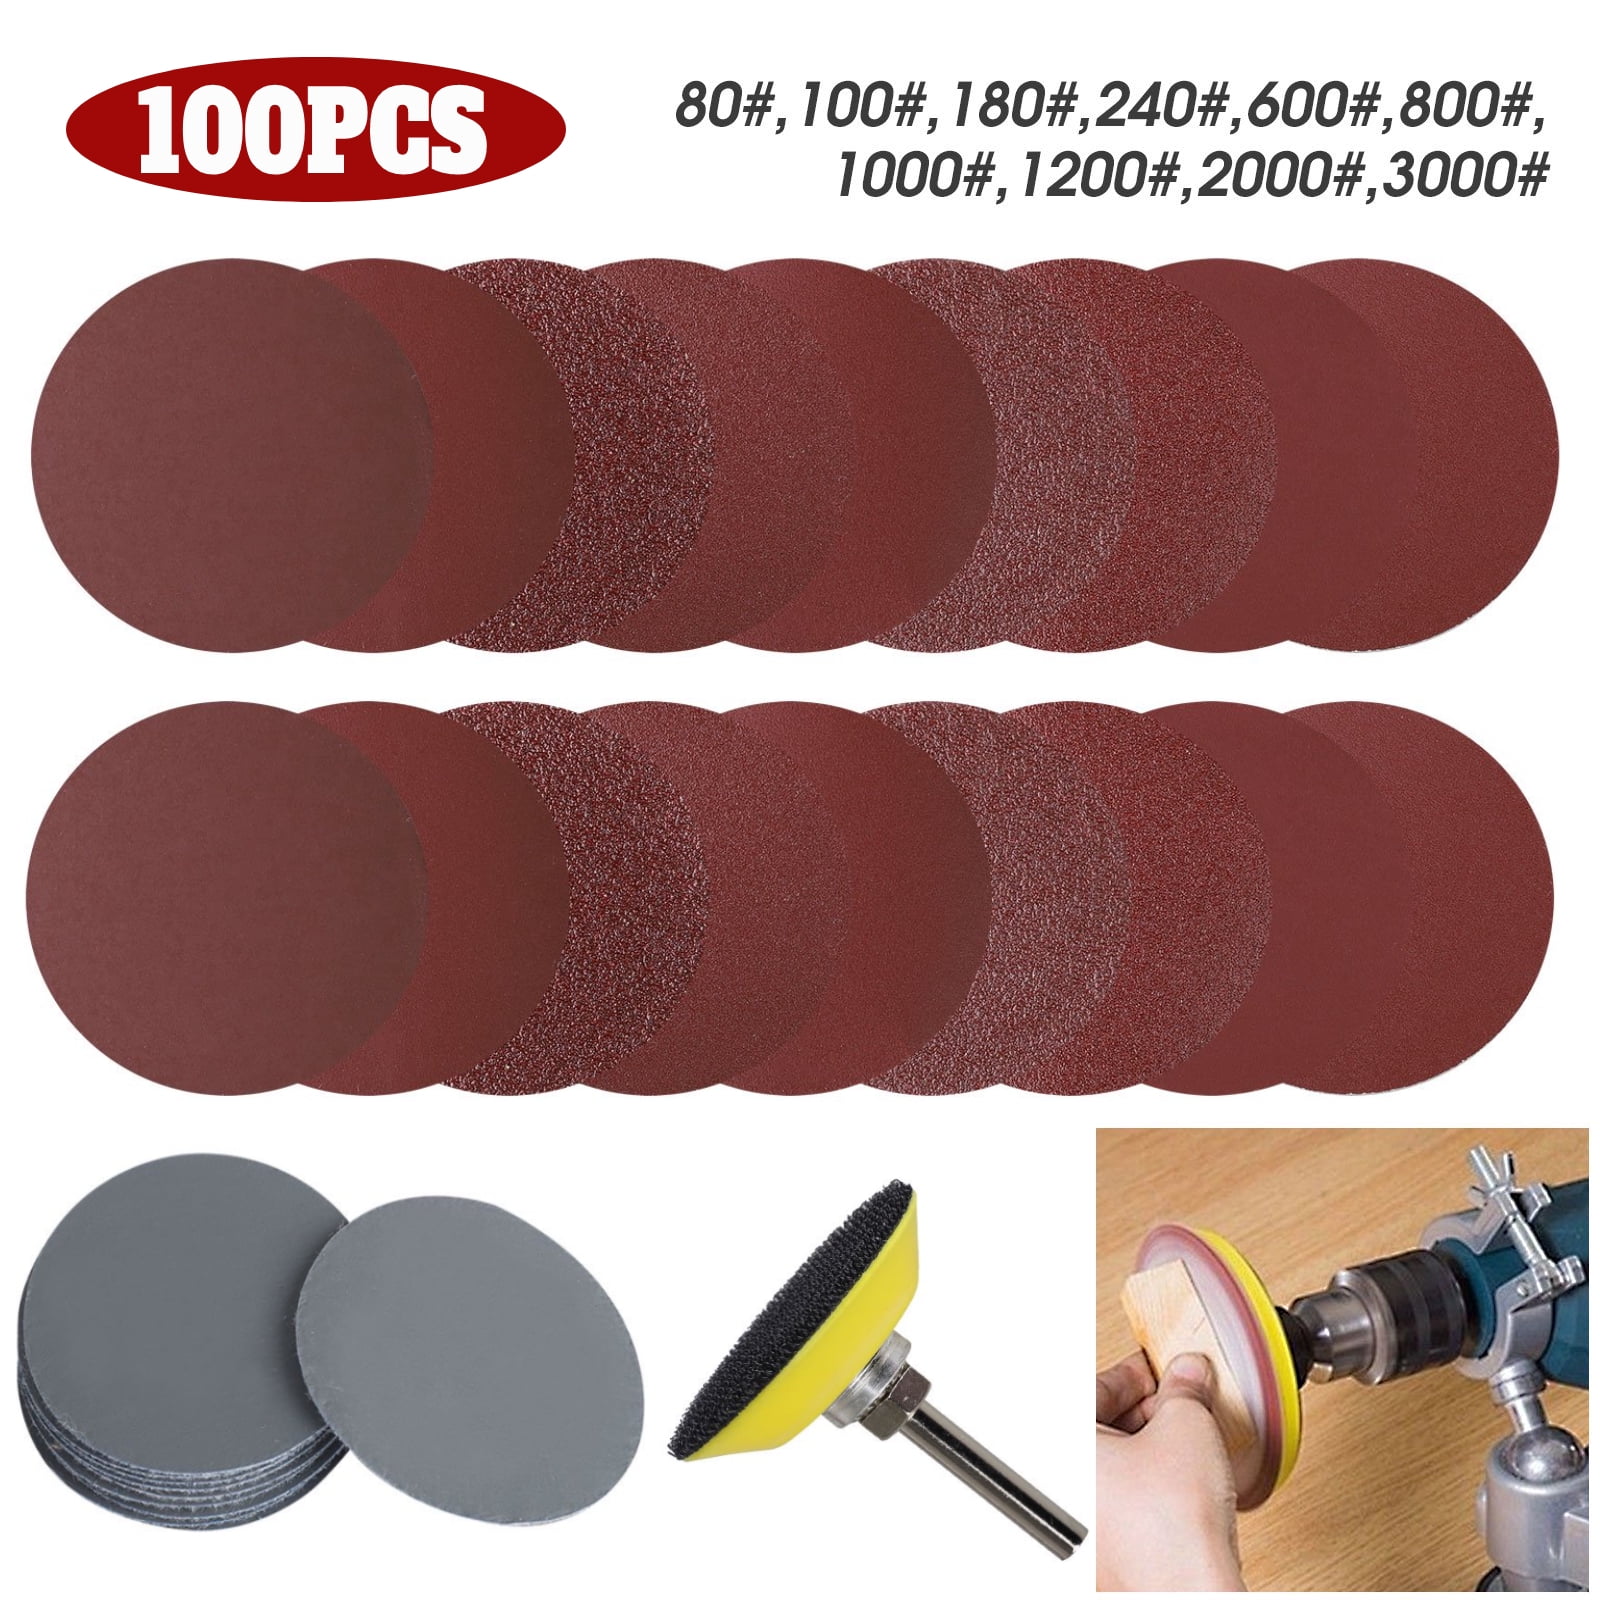 1" 25mm Sanding Pad Hook Loop Disc Plate Dremel 4000 3000 Accessories Fit Sander 